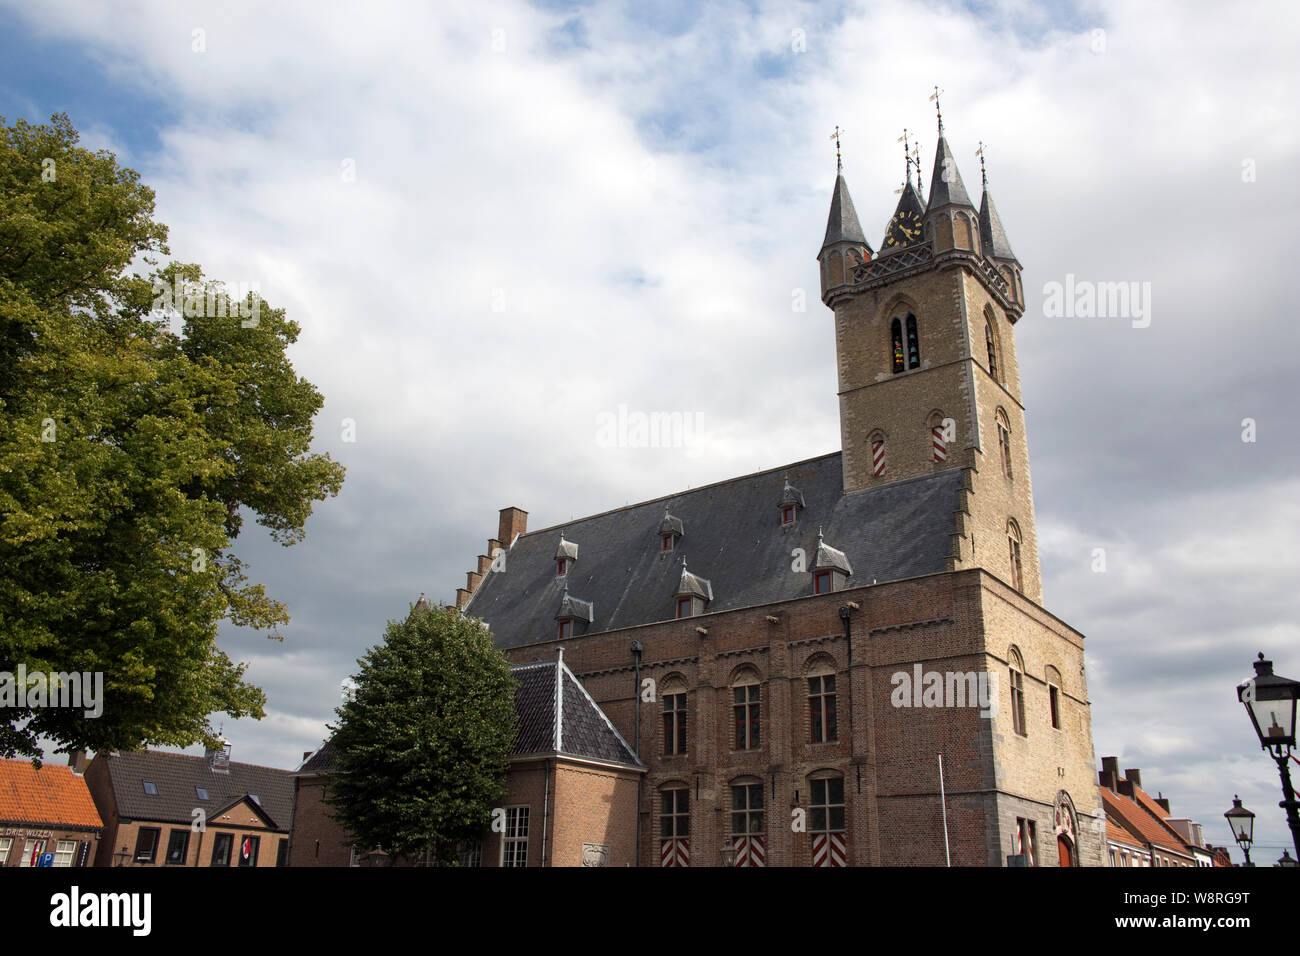 Historischer Glockenturm von 1396, Sluis, Zélande, Pays-Bas Banque D'Images